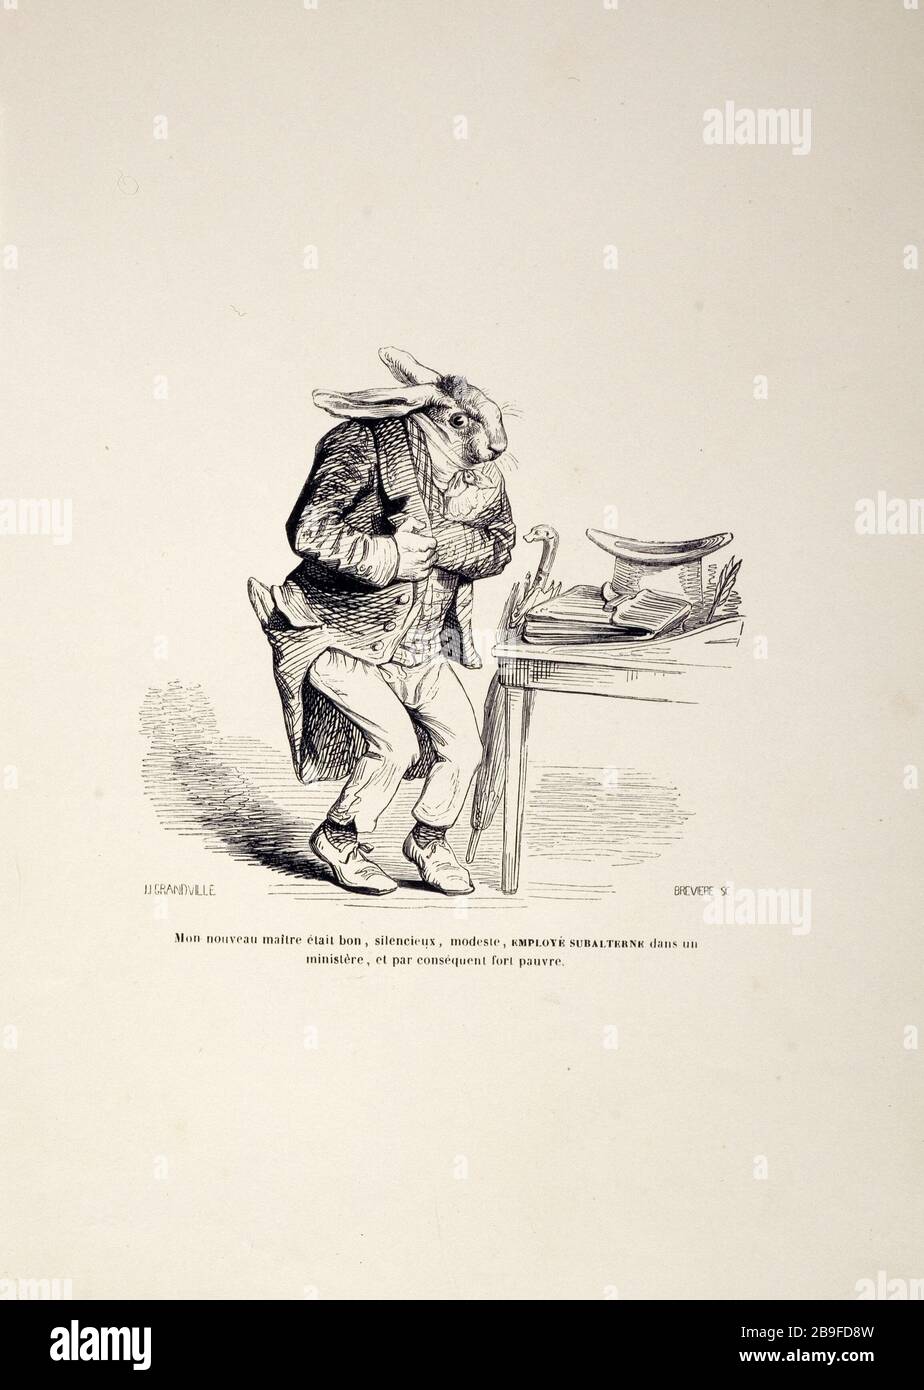 SCENES OF PRIVACY AND PUBLIC ANIMALS - MY NEW MASTER WAS GOOD ... Jean-Ignace-Isidore  Gérard, dit Grandville (1803-1847). "Scènes de la vie privée et publique  des animaux - mon nouveau maître était